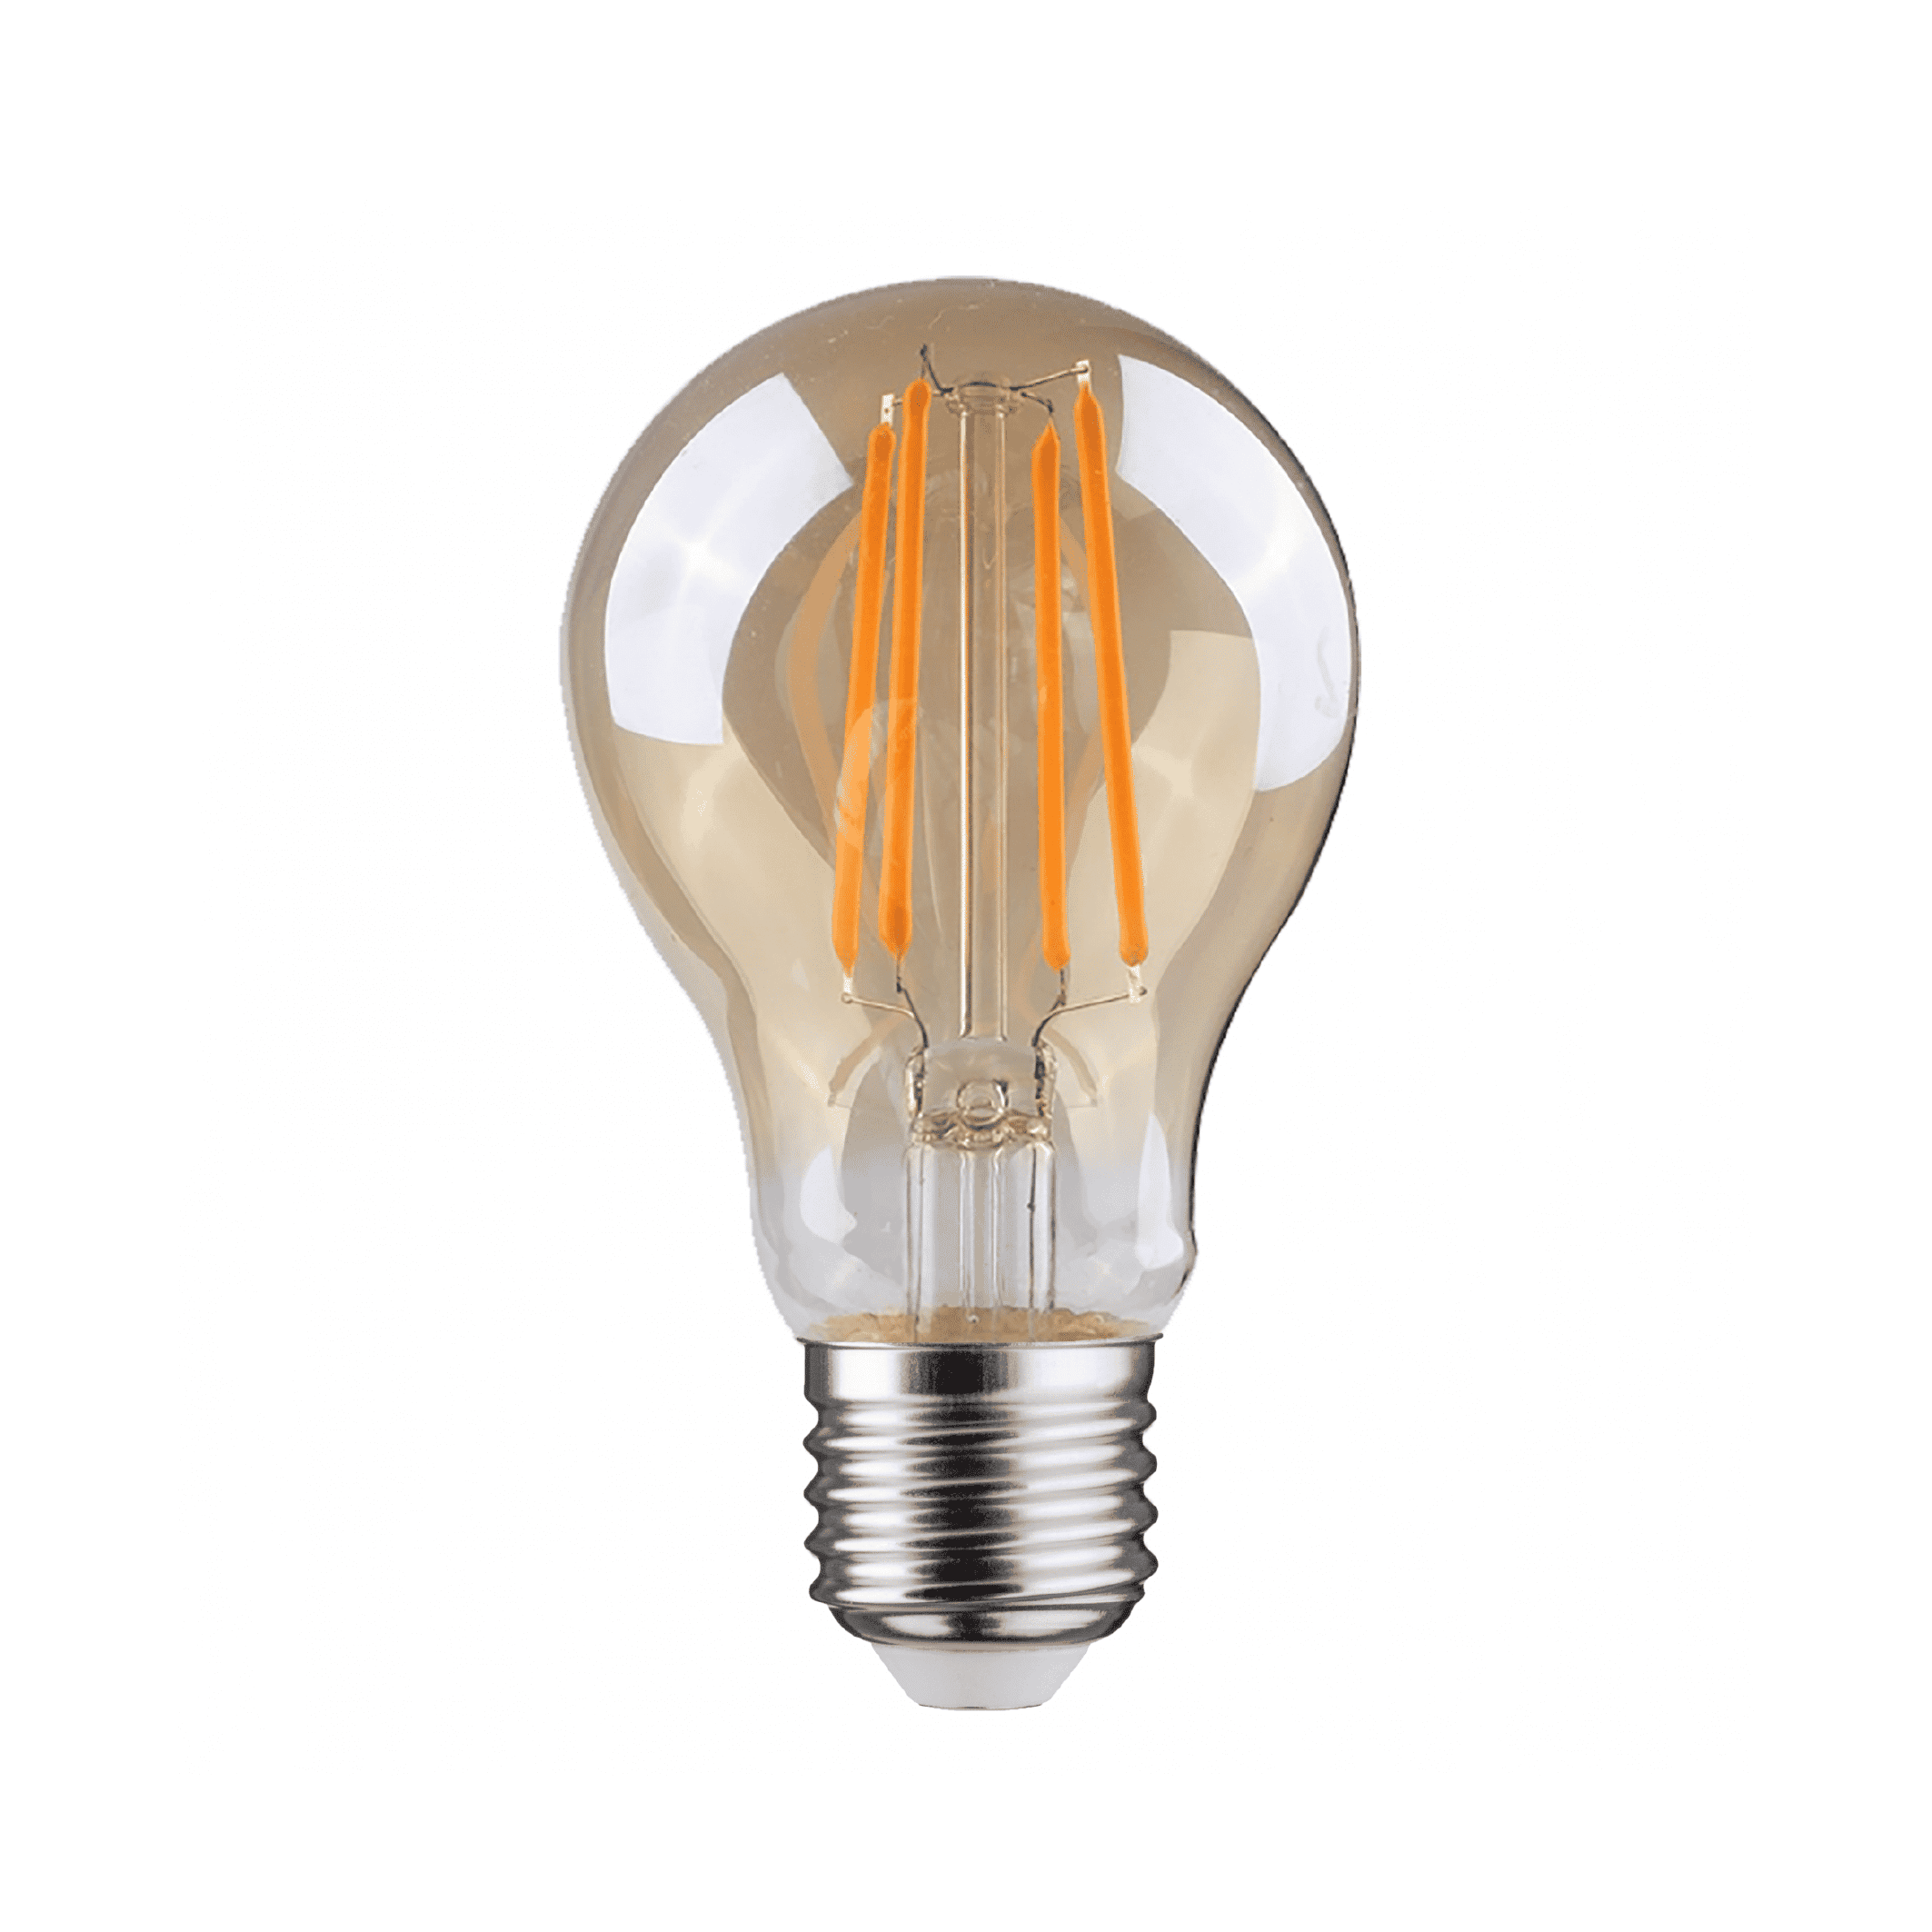 Uitpakken Voorwaarden nieuws E27 LED lamp kogel amber | 4 Watt | Dimbaar - WilroLighting